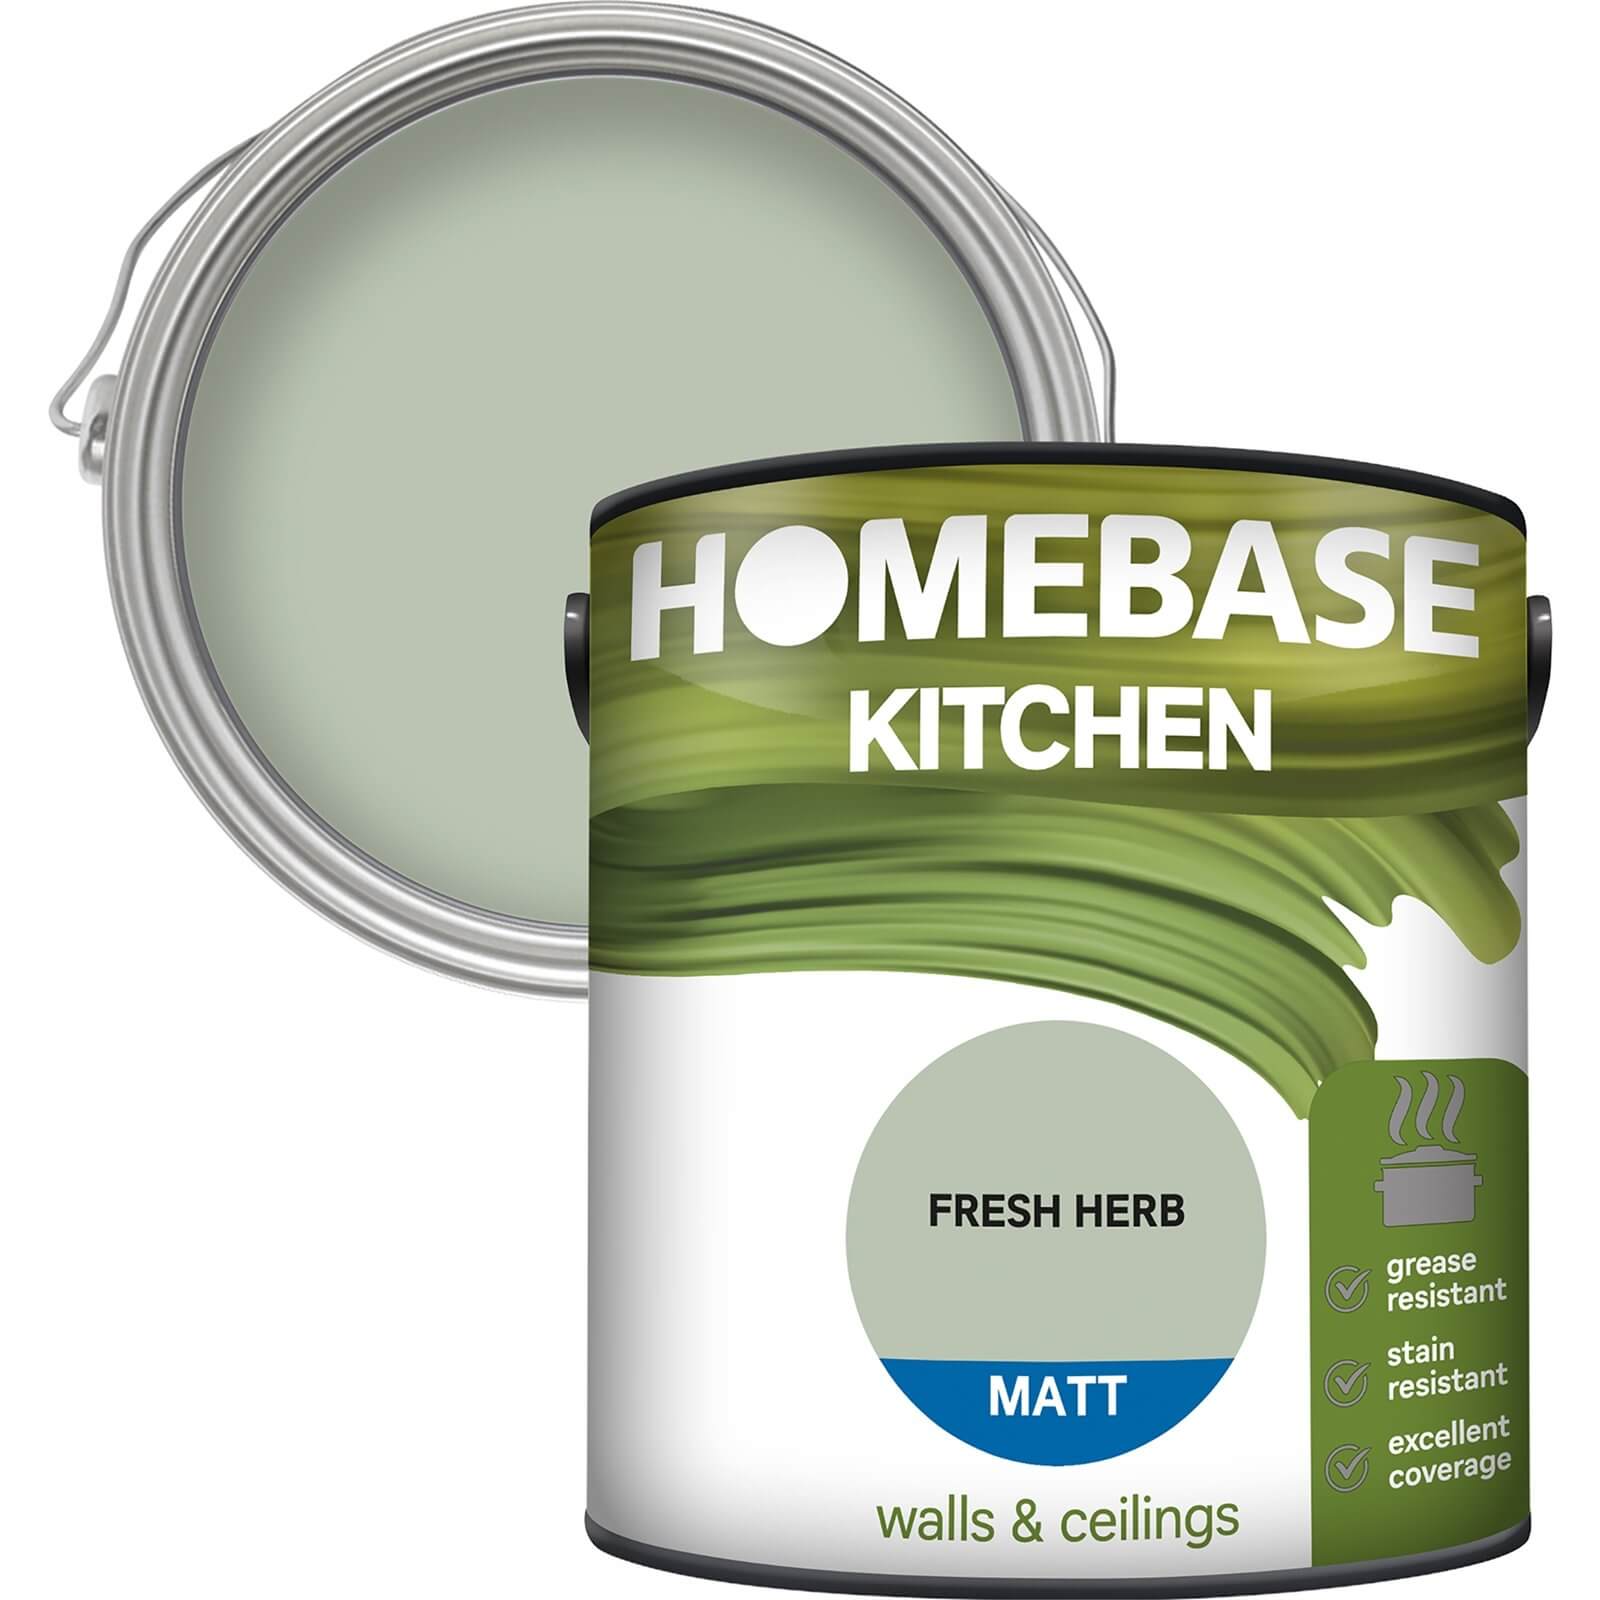 Homebase Kitchen Matt Paint - Fresh Herb 2.5L